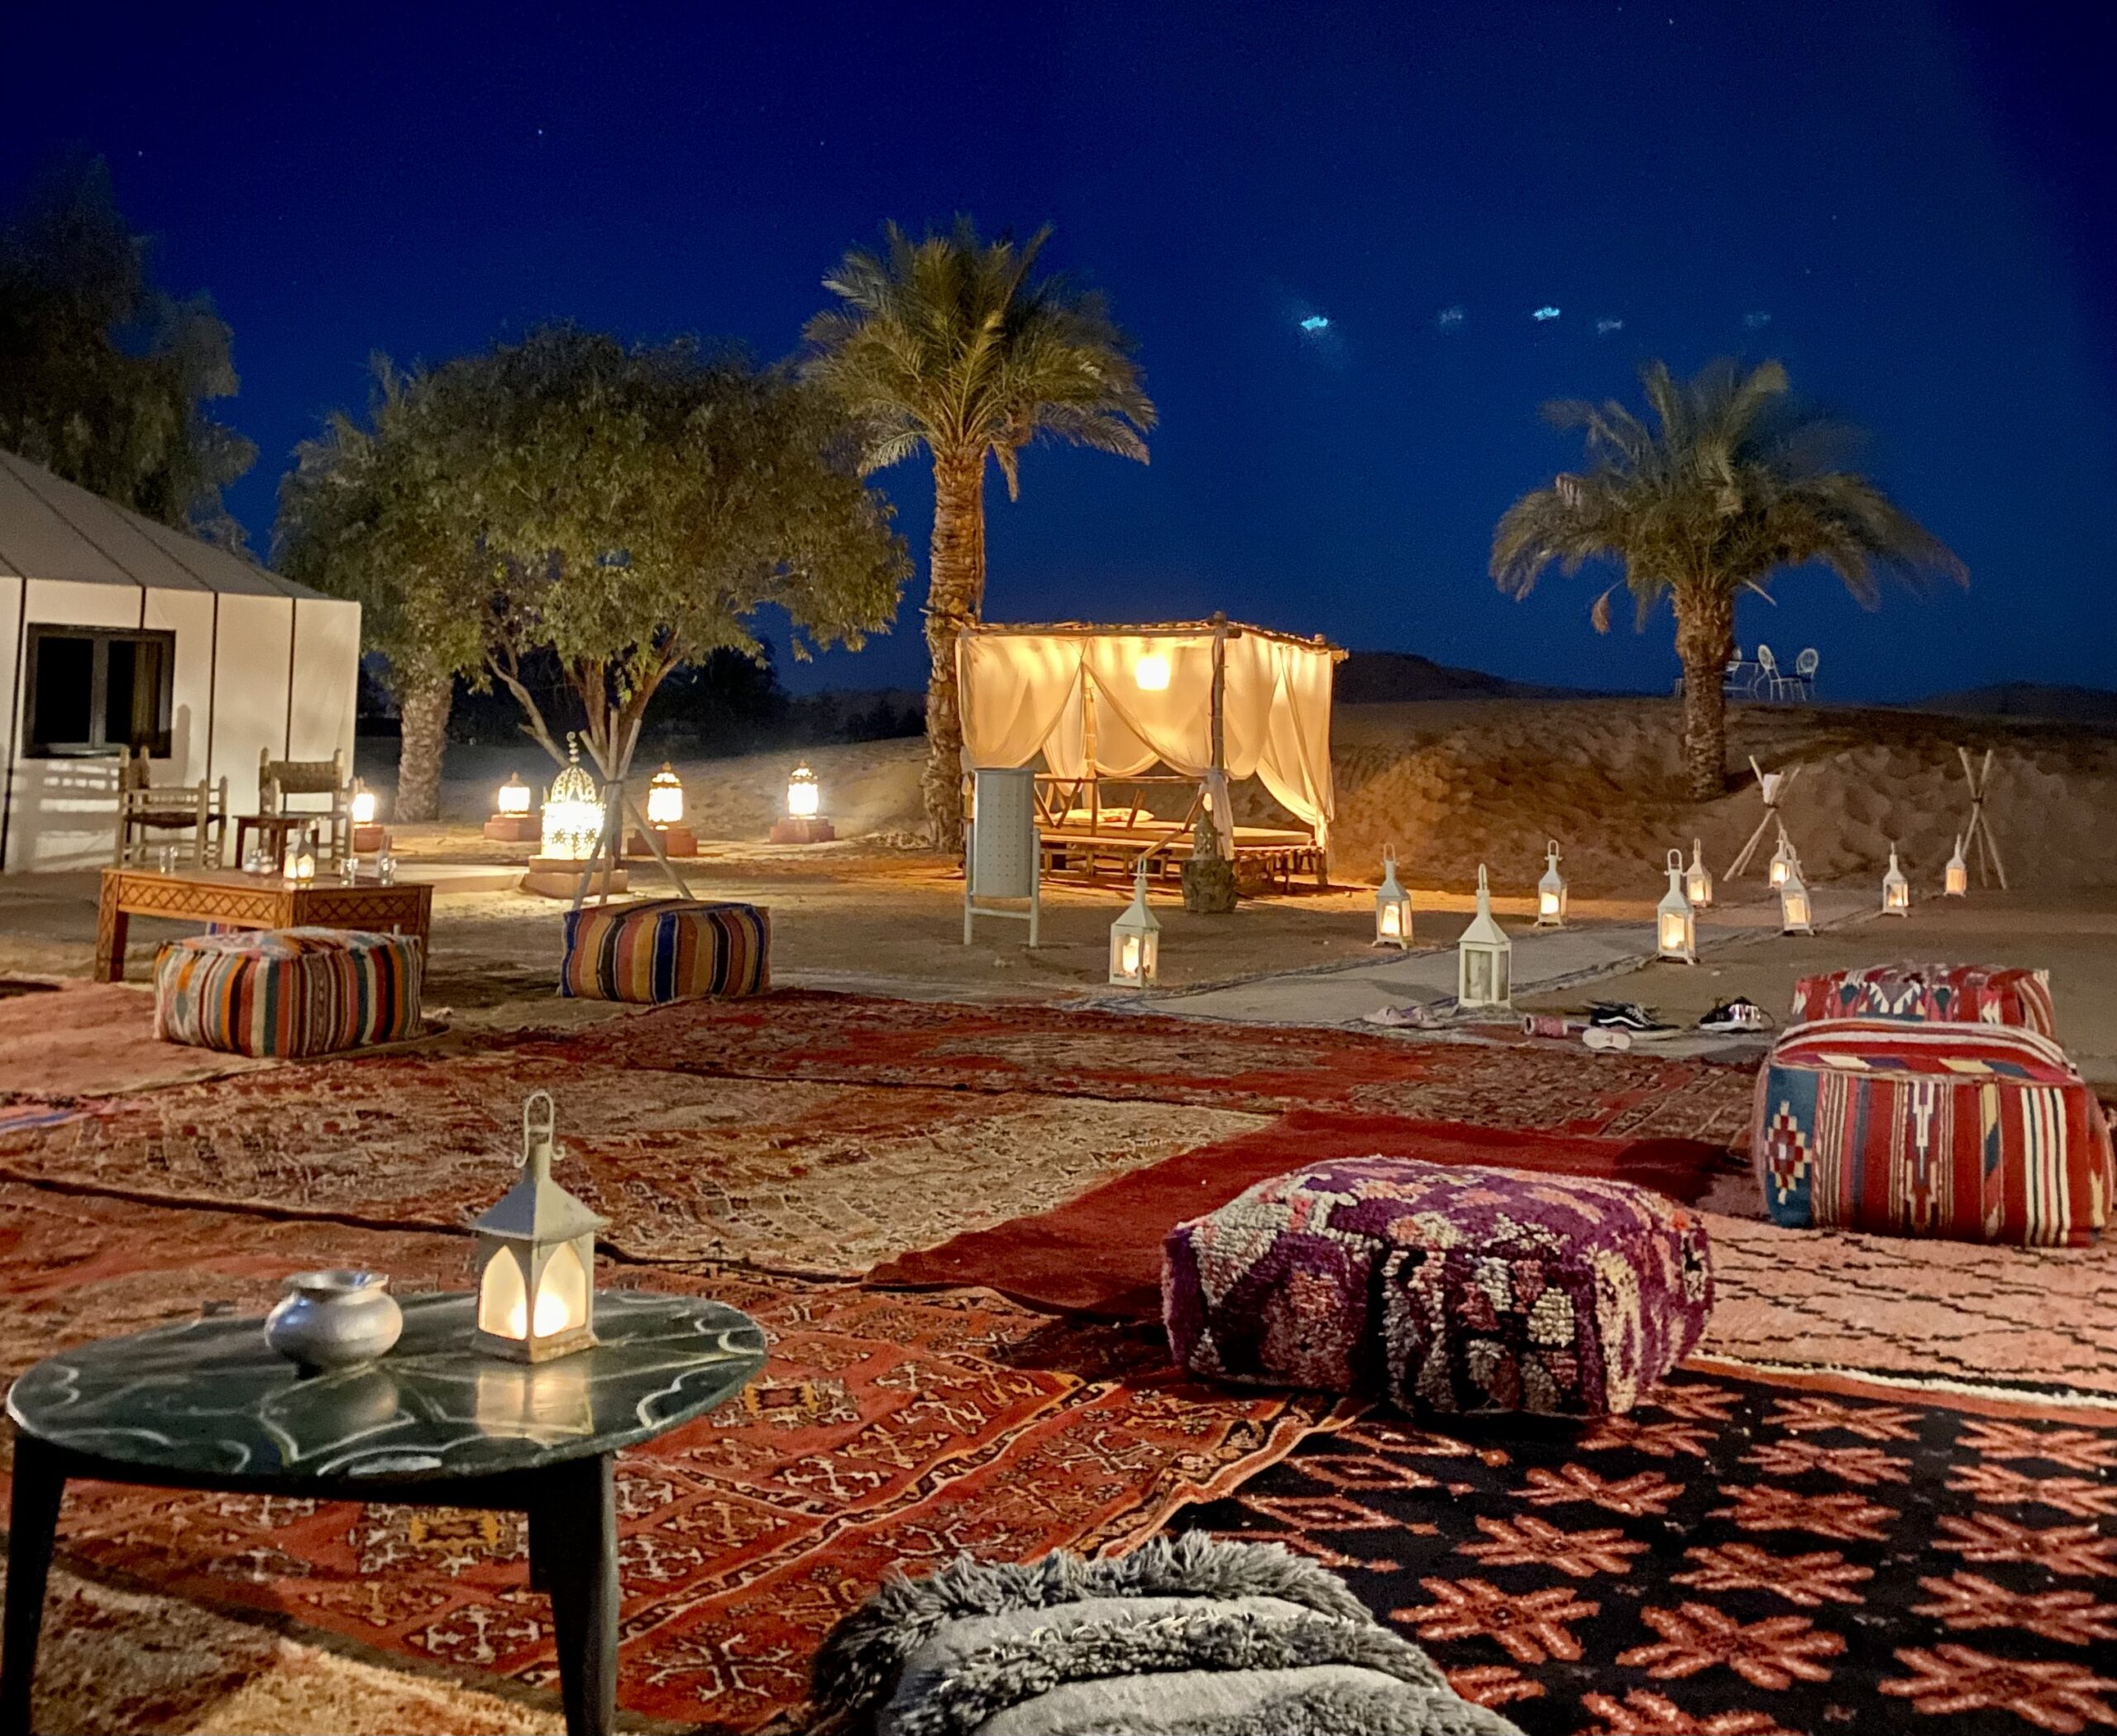 Cómo visitar el desierto en Marruecos?